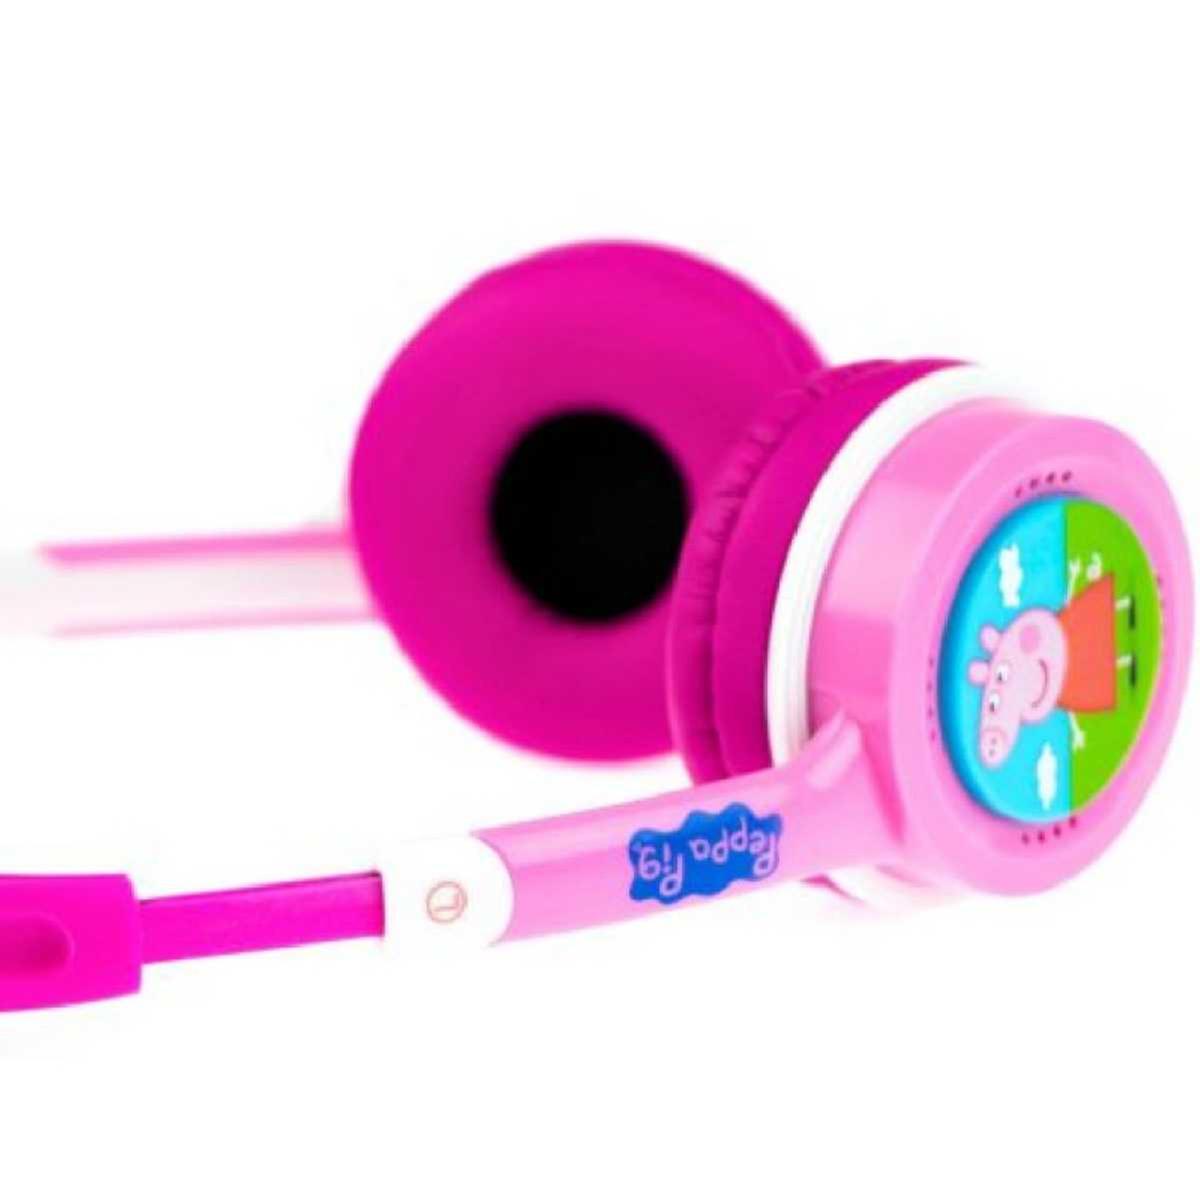 Peppa Pig Auriculares Infantiles para Niñas, Cascos Musica Niños,  Auriculares Diadema con Cable Niña, Rosa